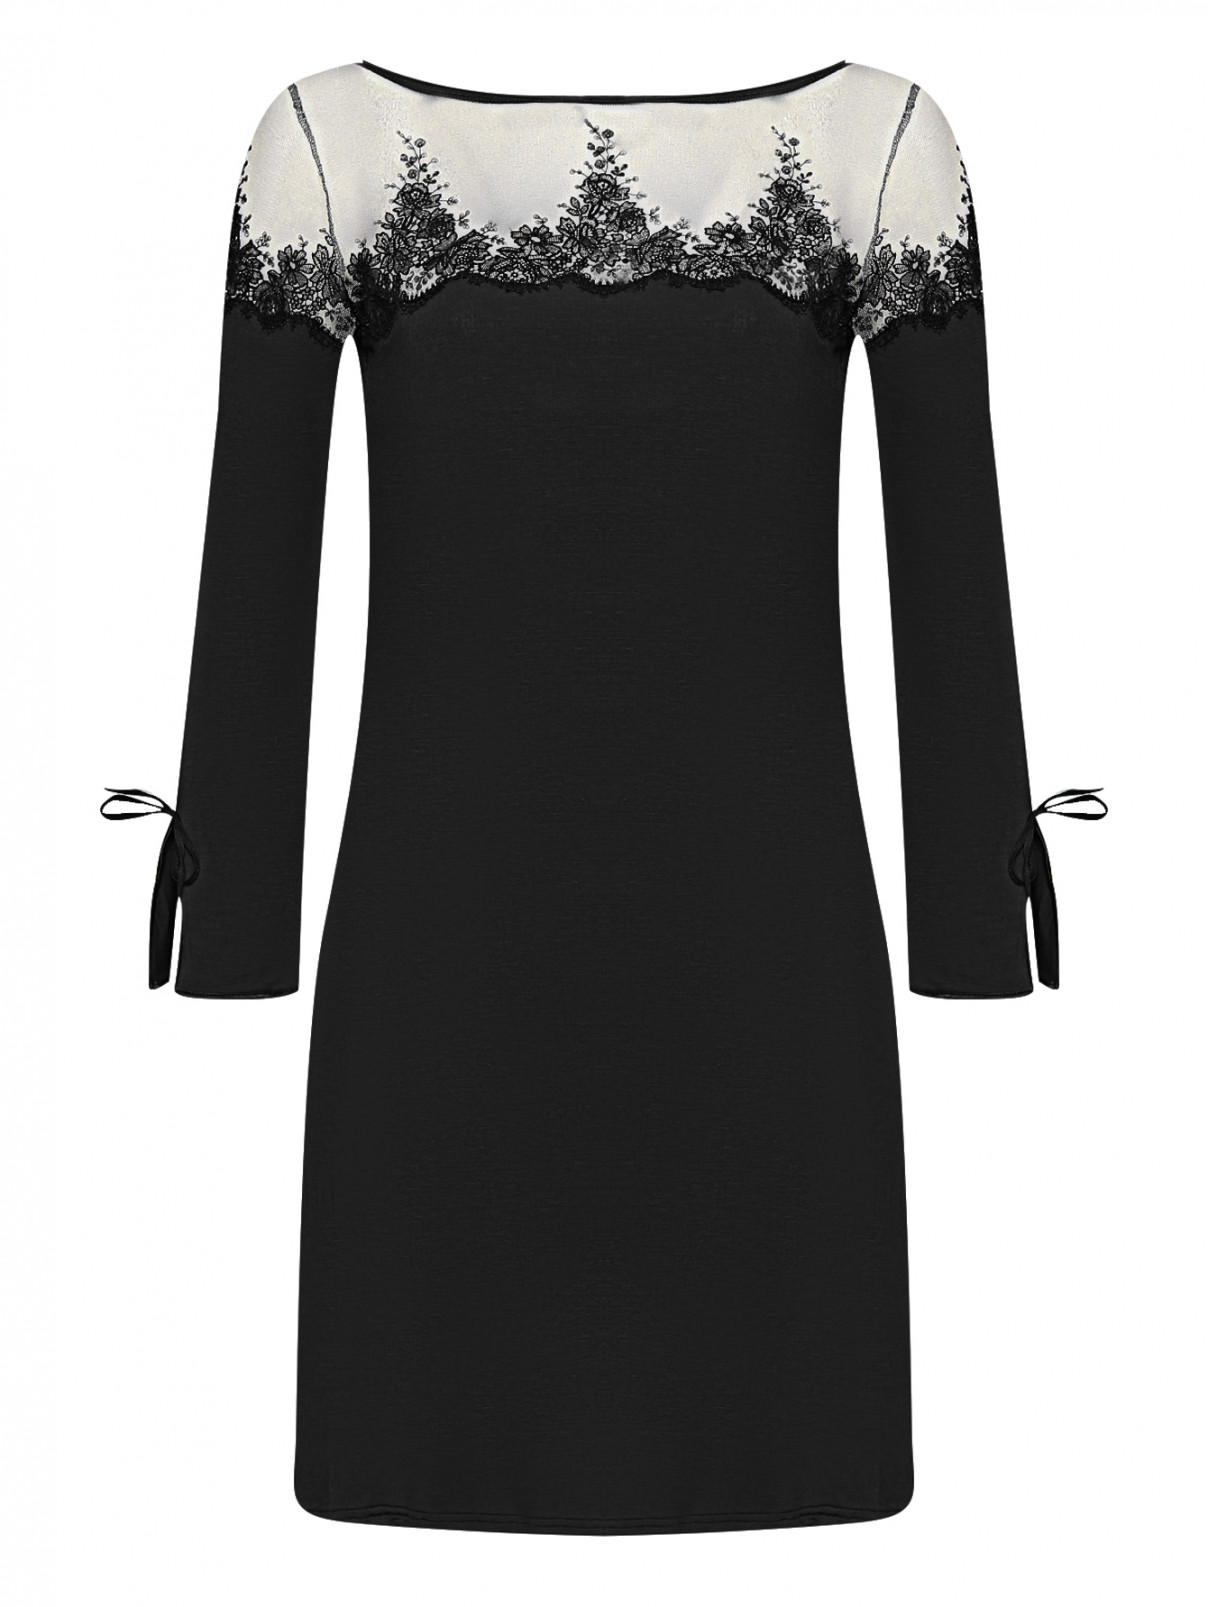 Ночная сорочка с кружевной вышивкой Ritratti  –  Общий вид  – Цвет:  Черный